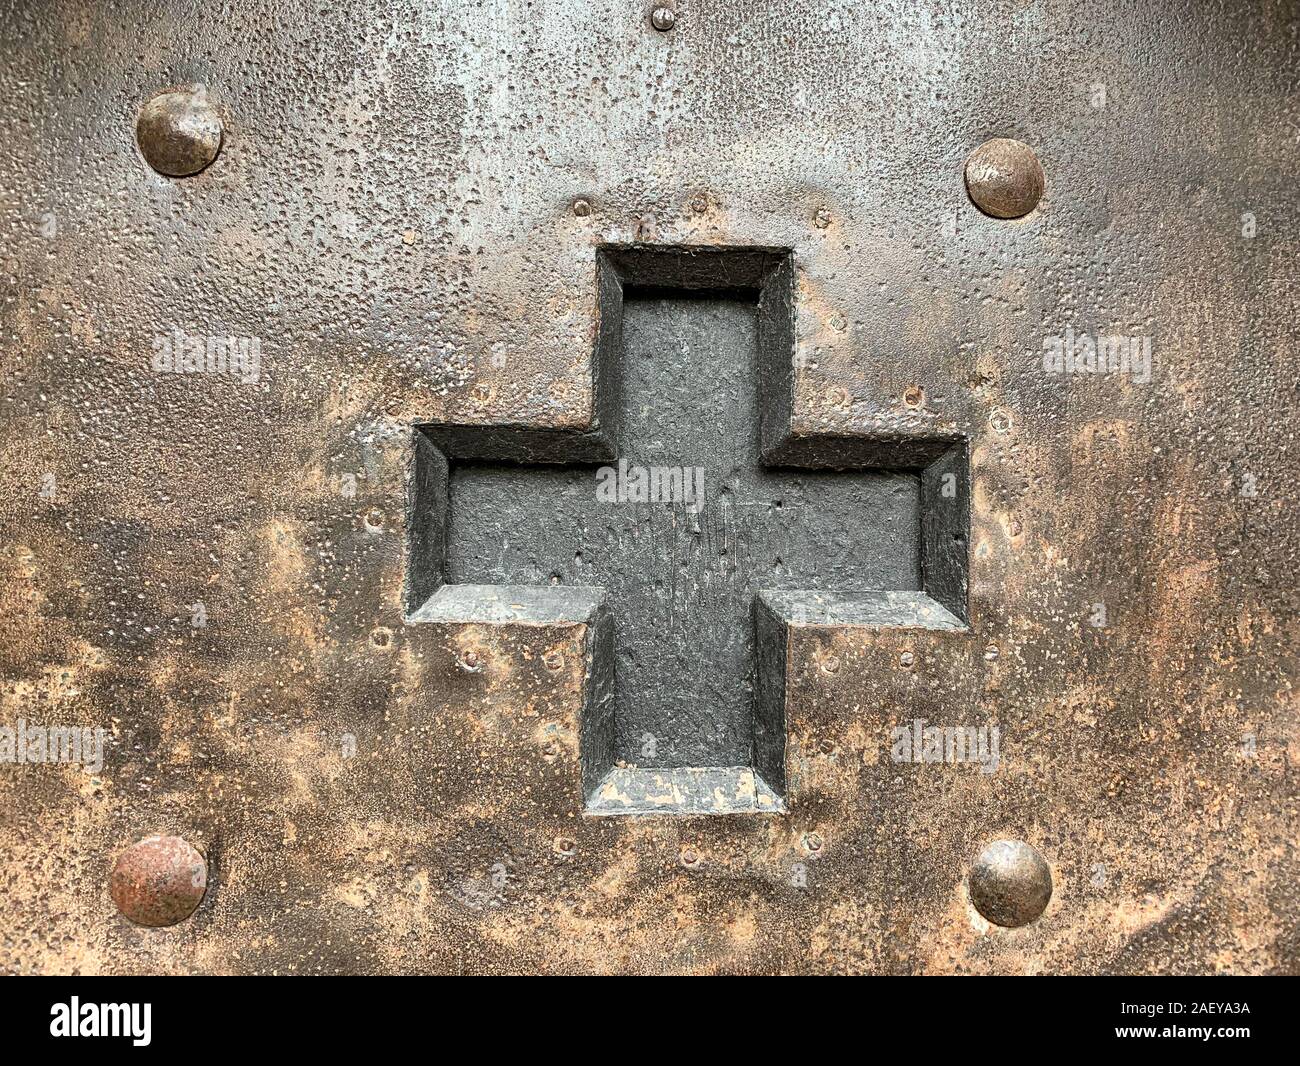 Ausgeschnitten schwarzes Kreuz in eine eiserne Tür mit Nieten, Nägel und Schrauben. Alten Beschlag aus dem Mittelalter, verwitterte, oxidiert und konserviert. Stockfoto